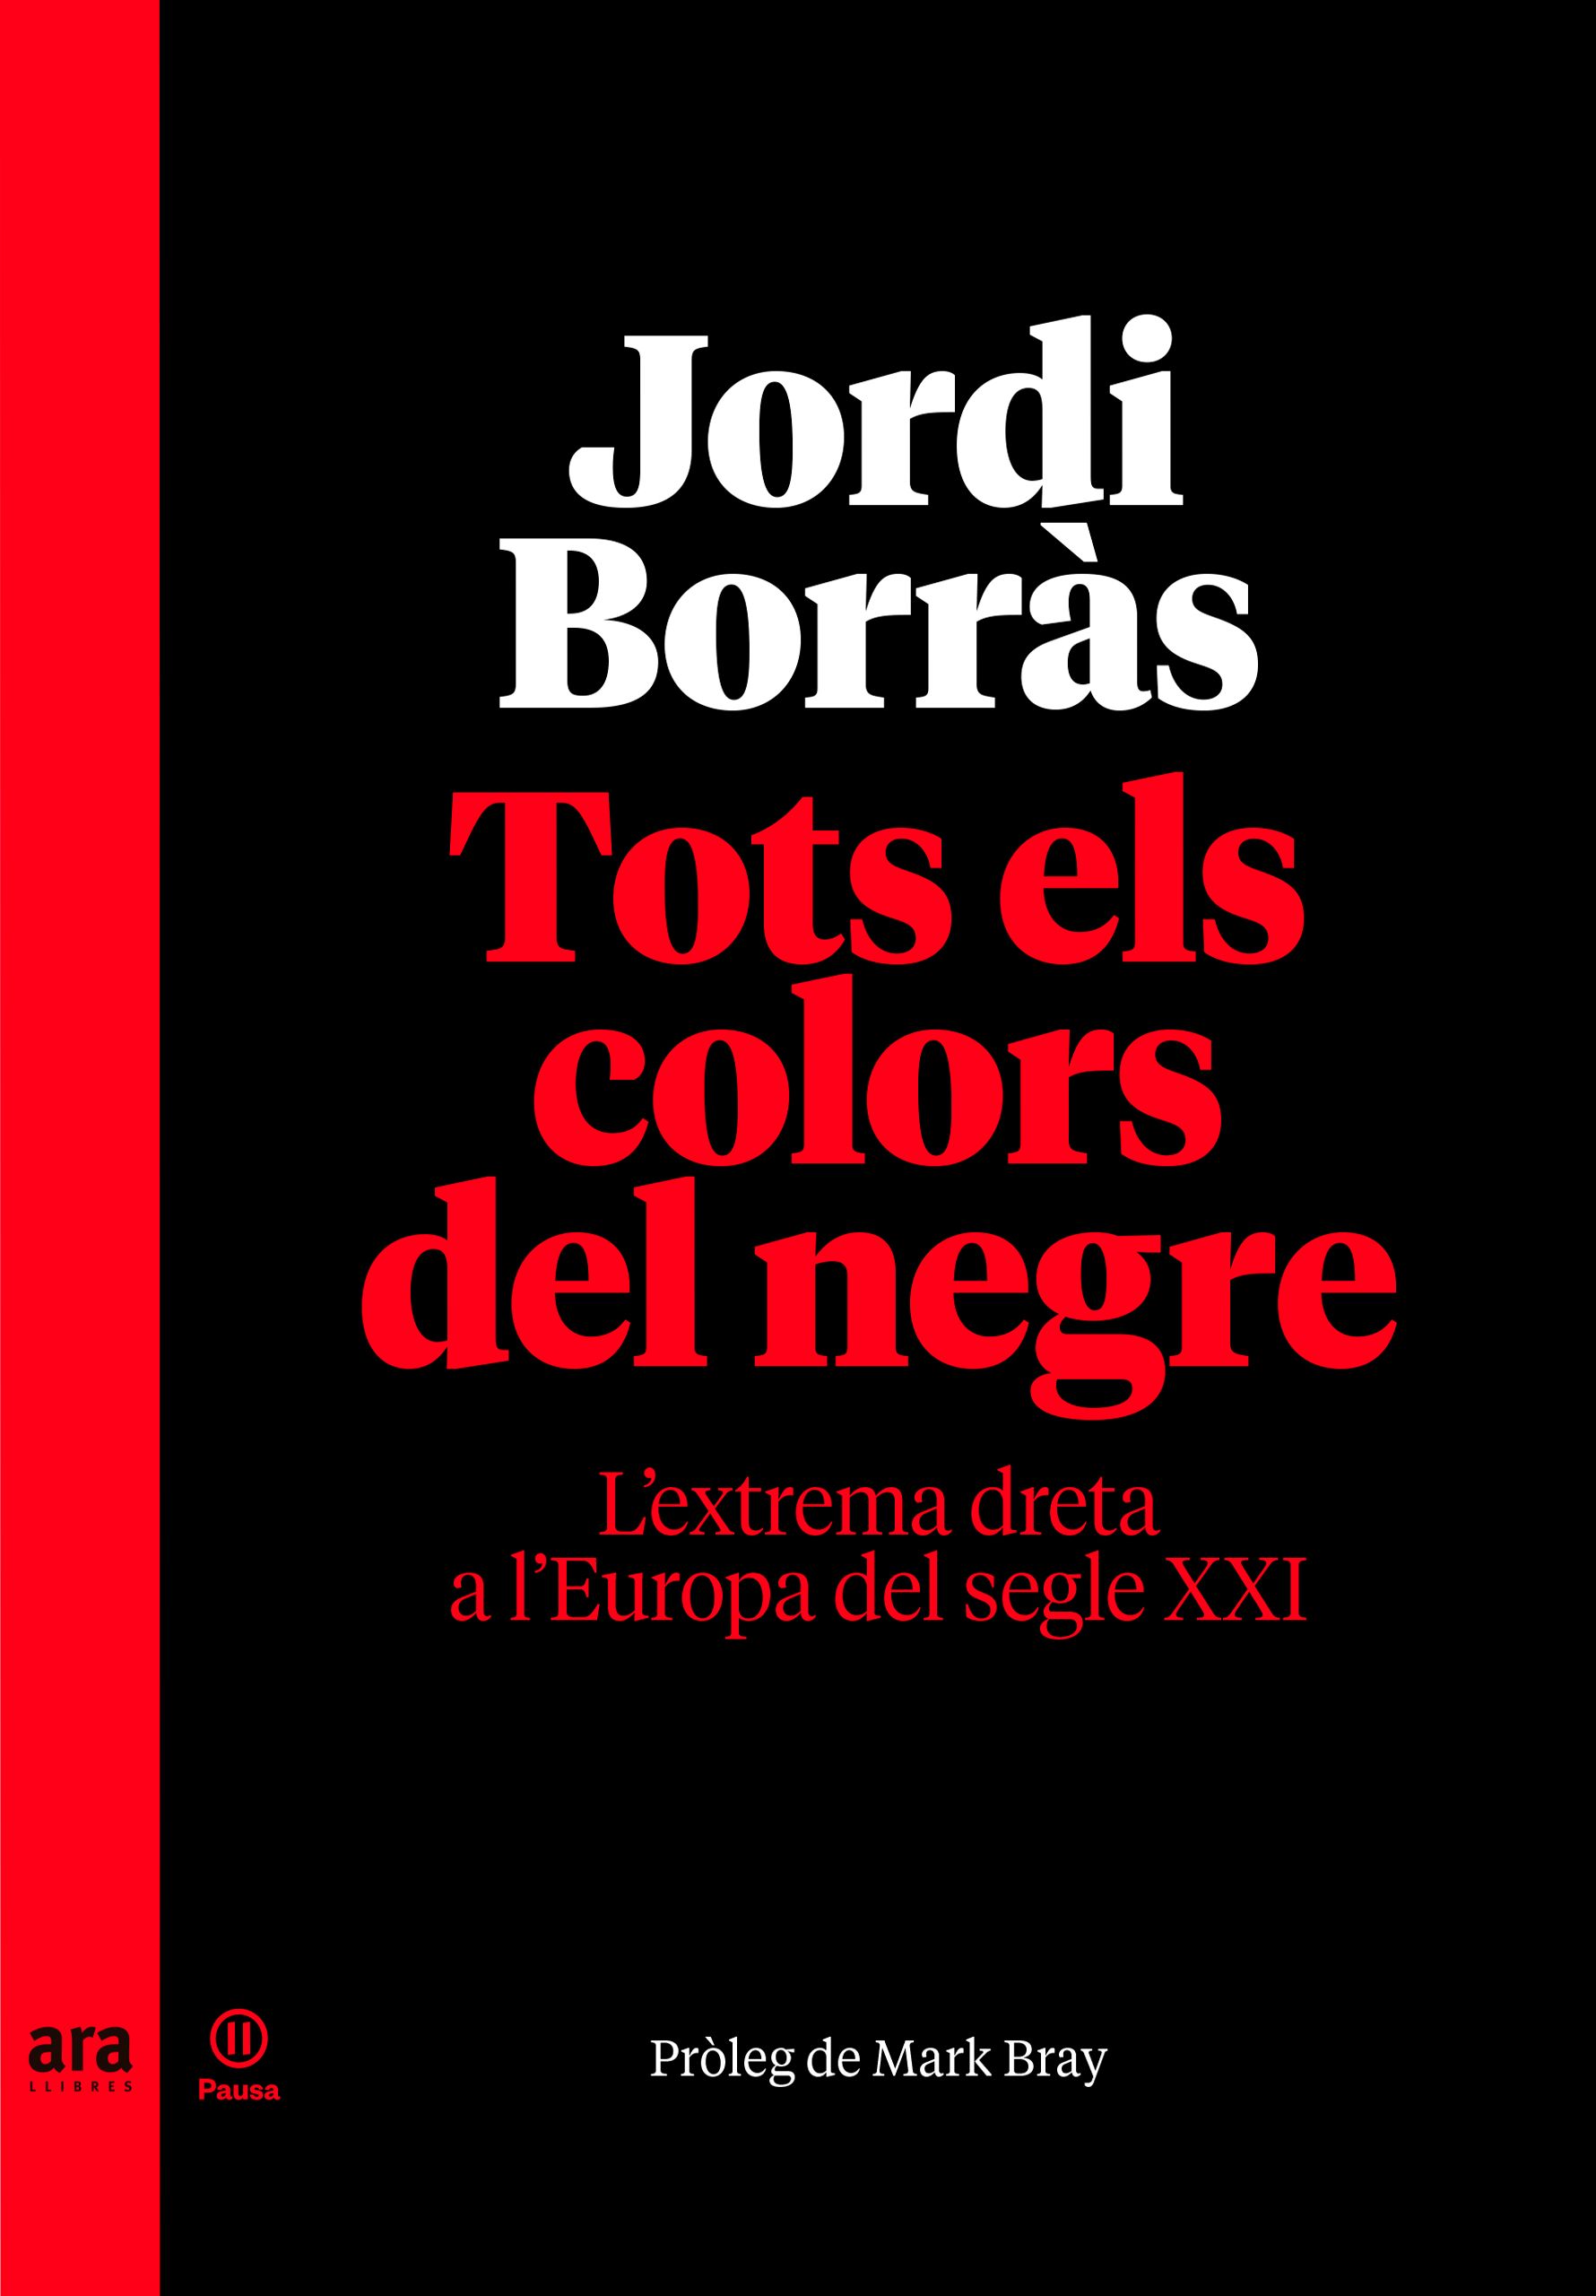 Portada del llibre 'Tots els colors del negre' de Jordi Borràs.